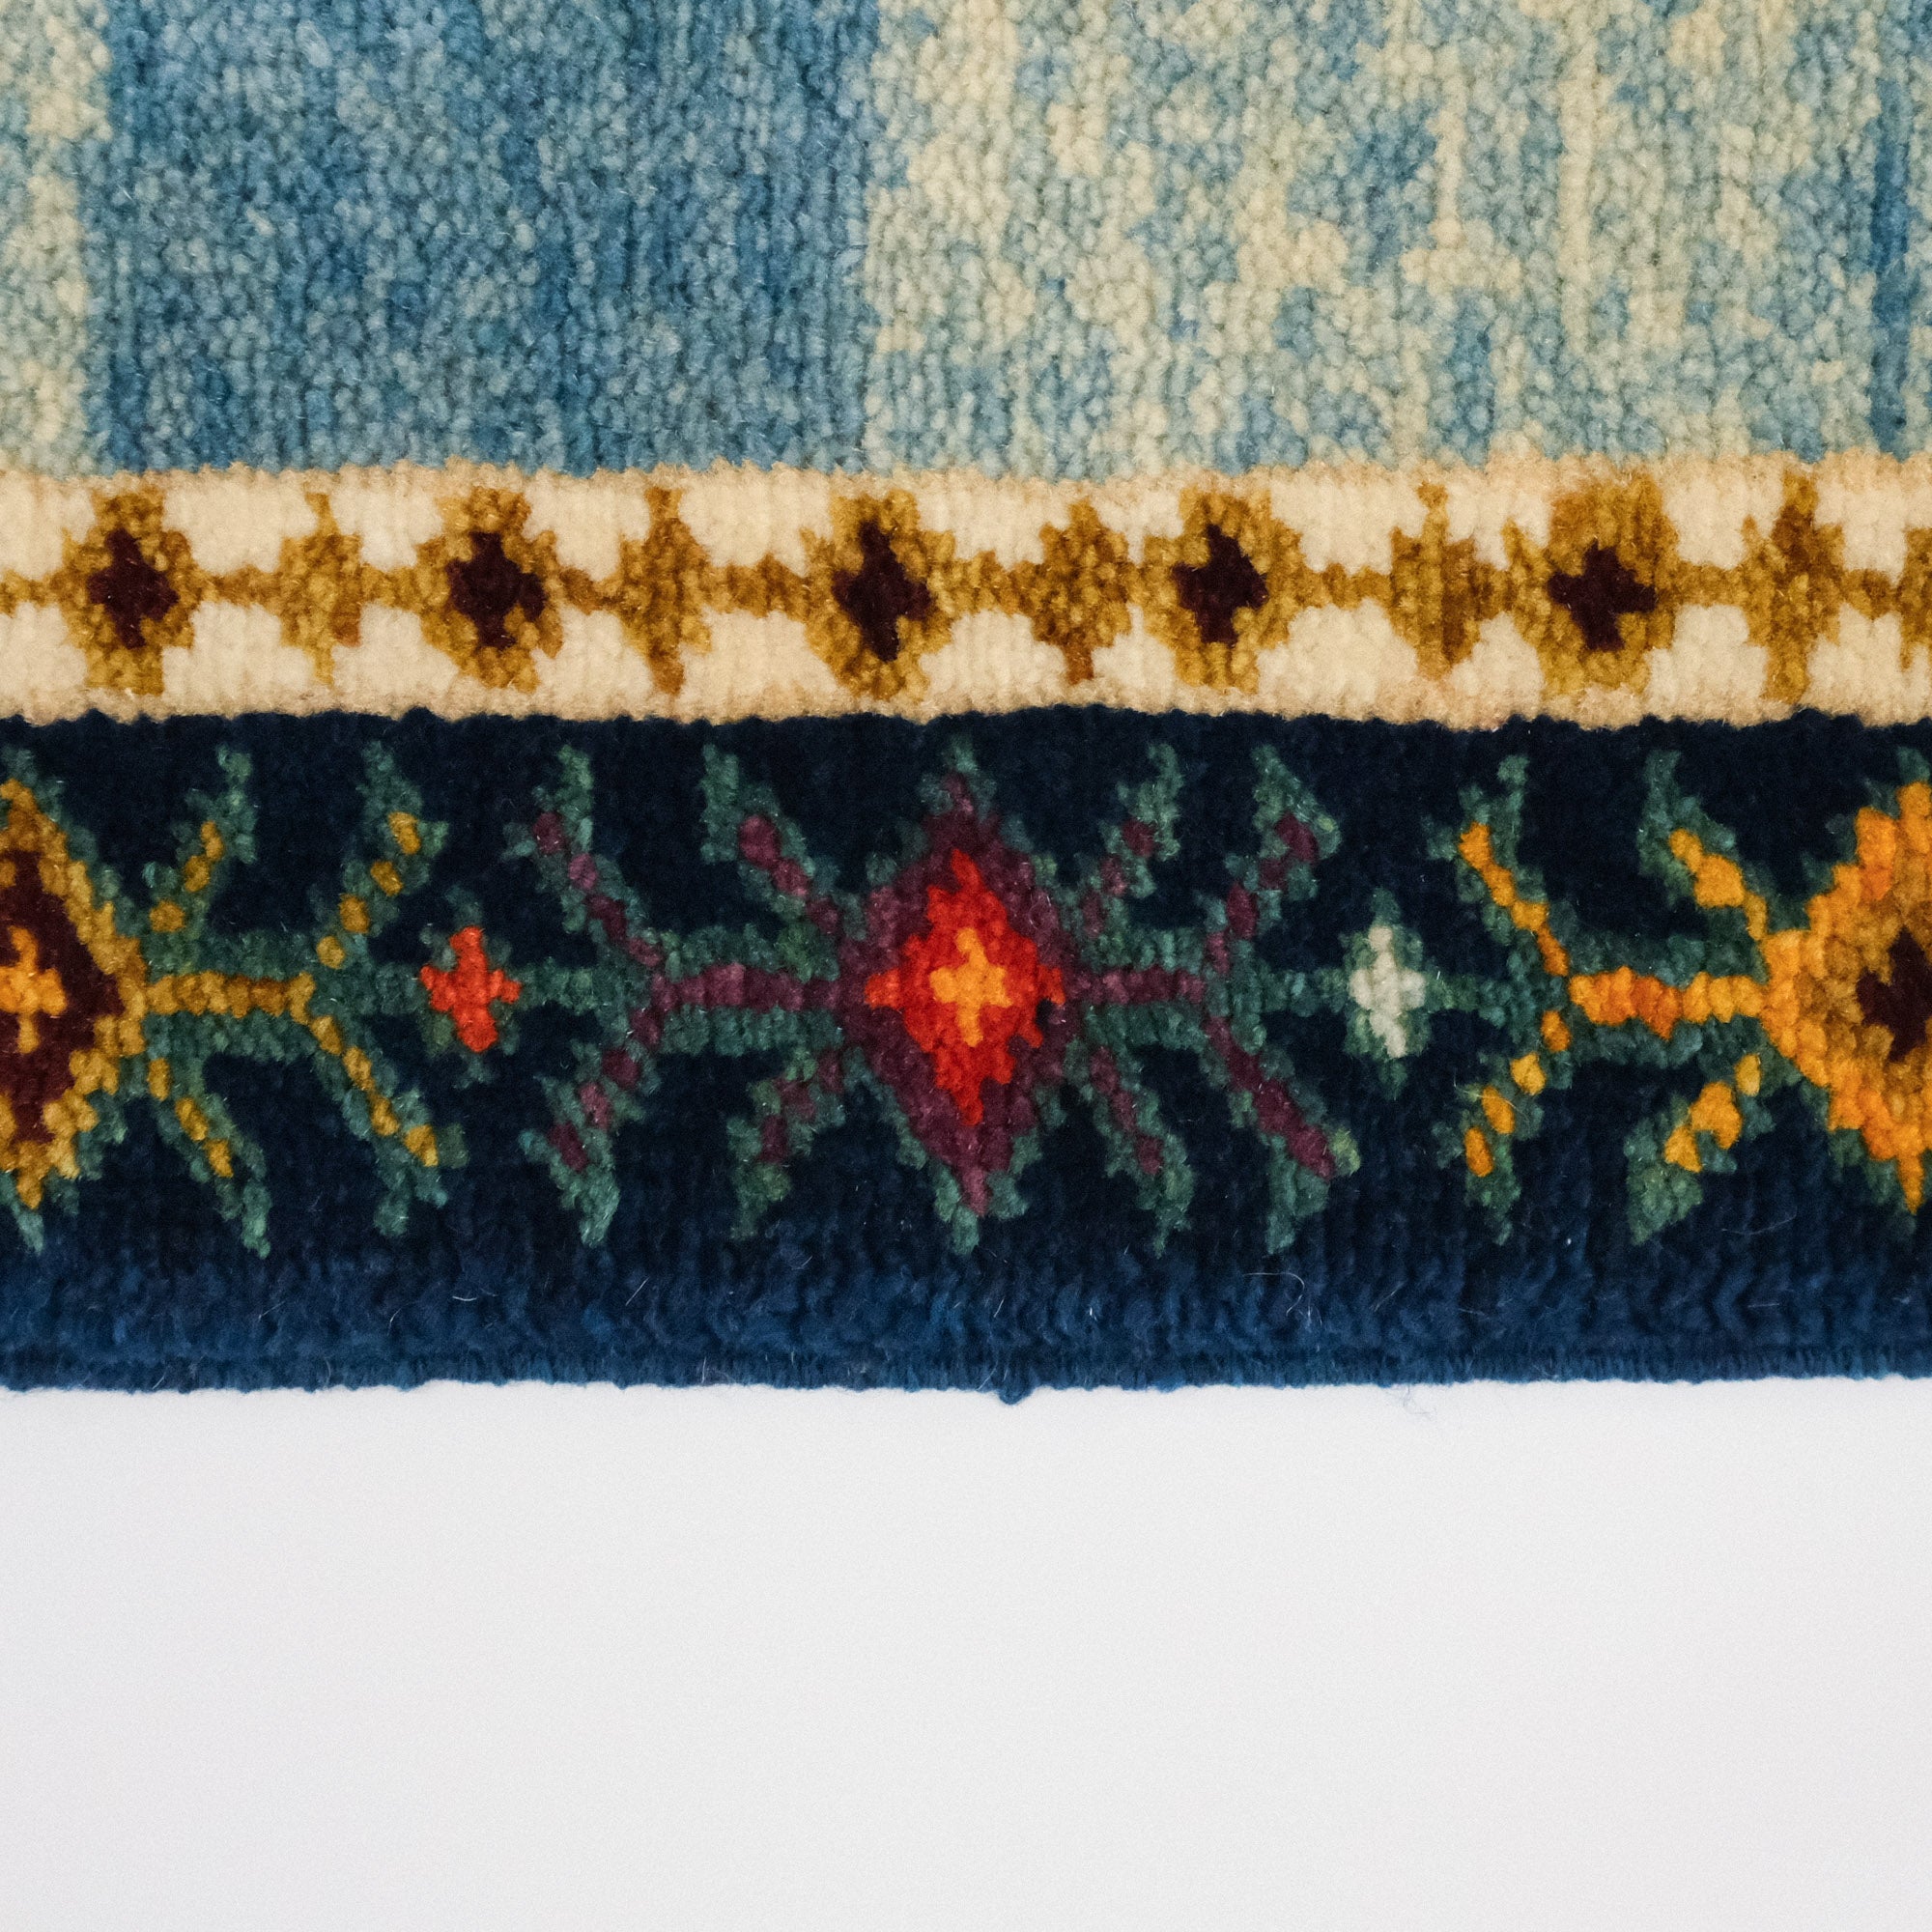 Anatolian Shawl Series Sivas Zara Patterned Hand-Woven Wool Carpet